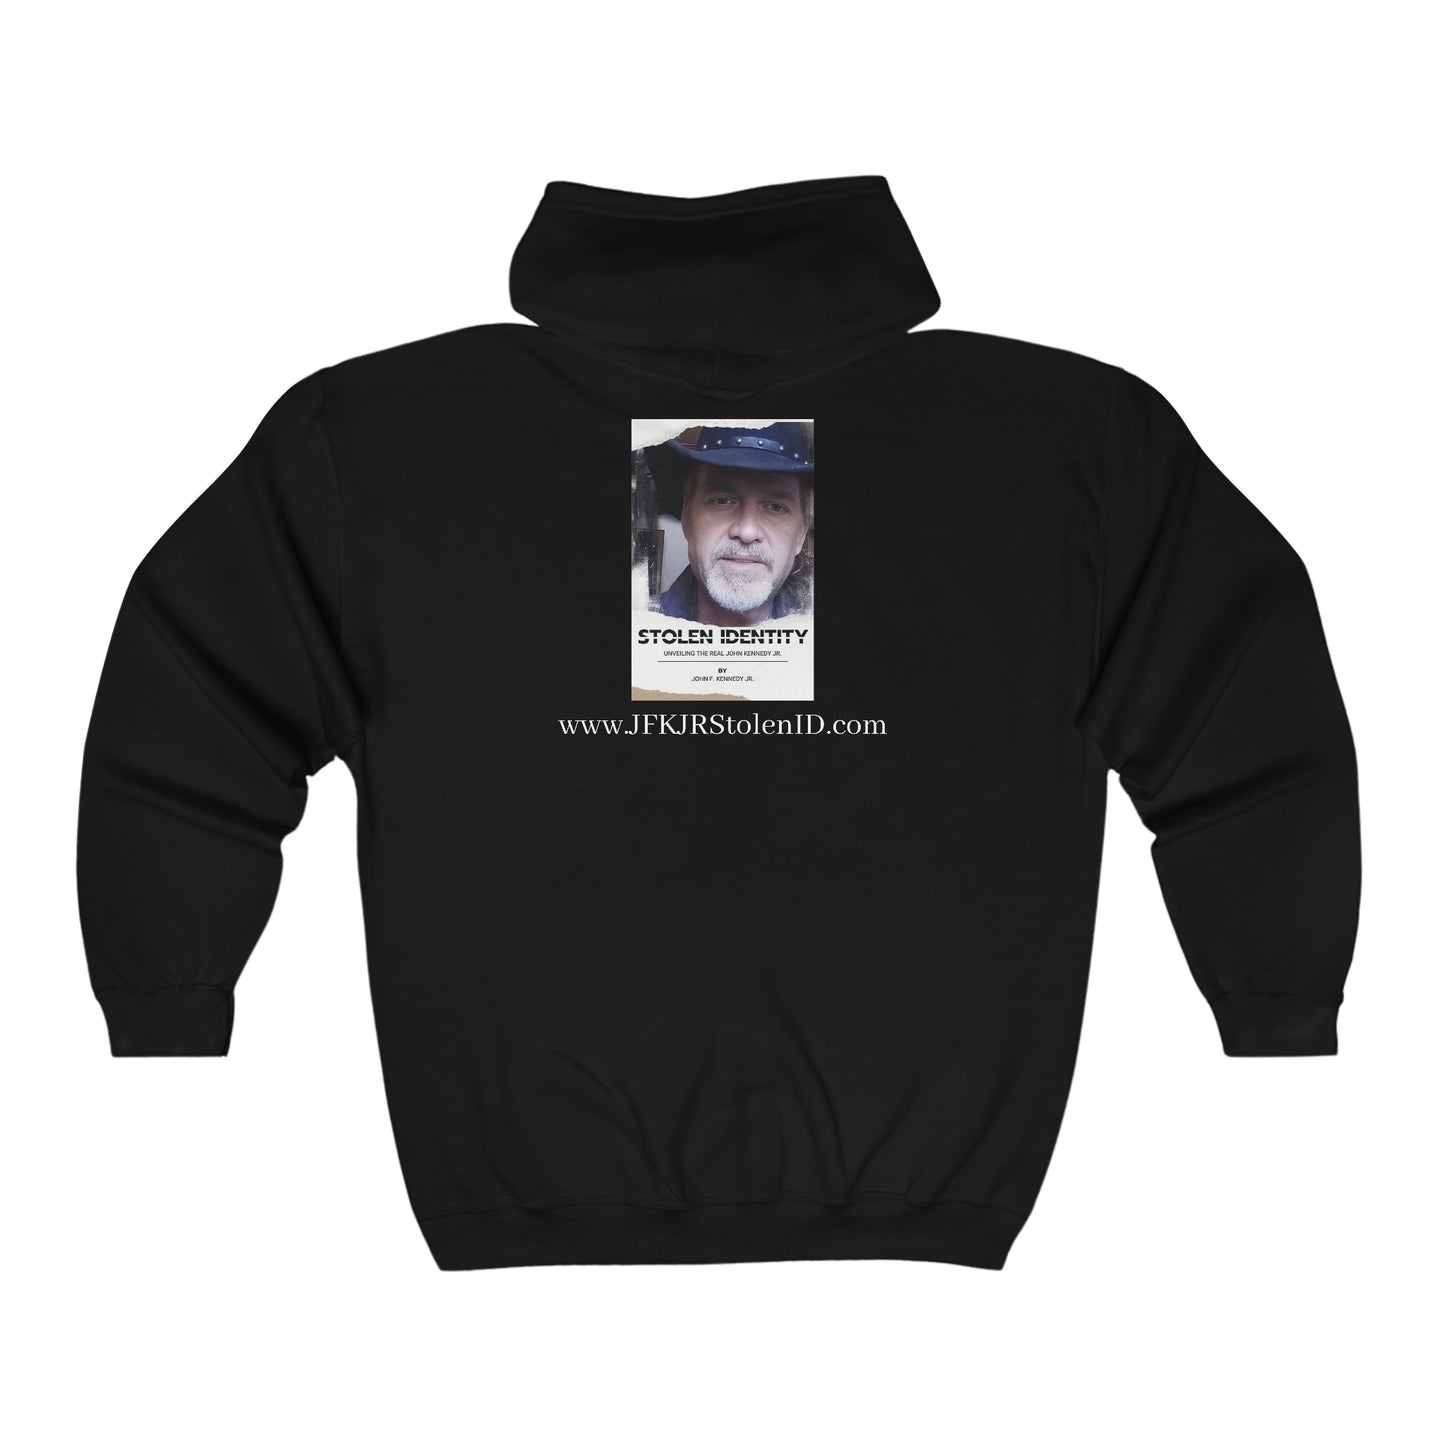 Stolen Identity - JFK JR Full Zip Hooded Sweatshirt